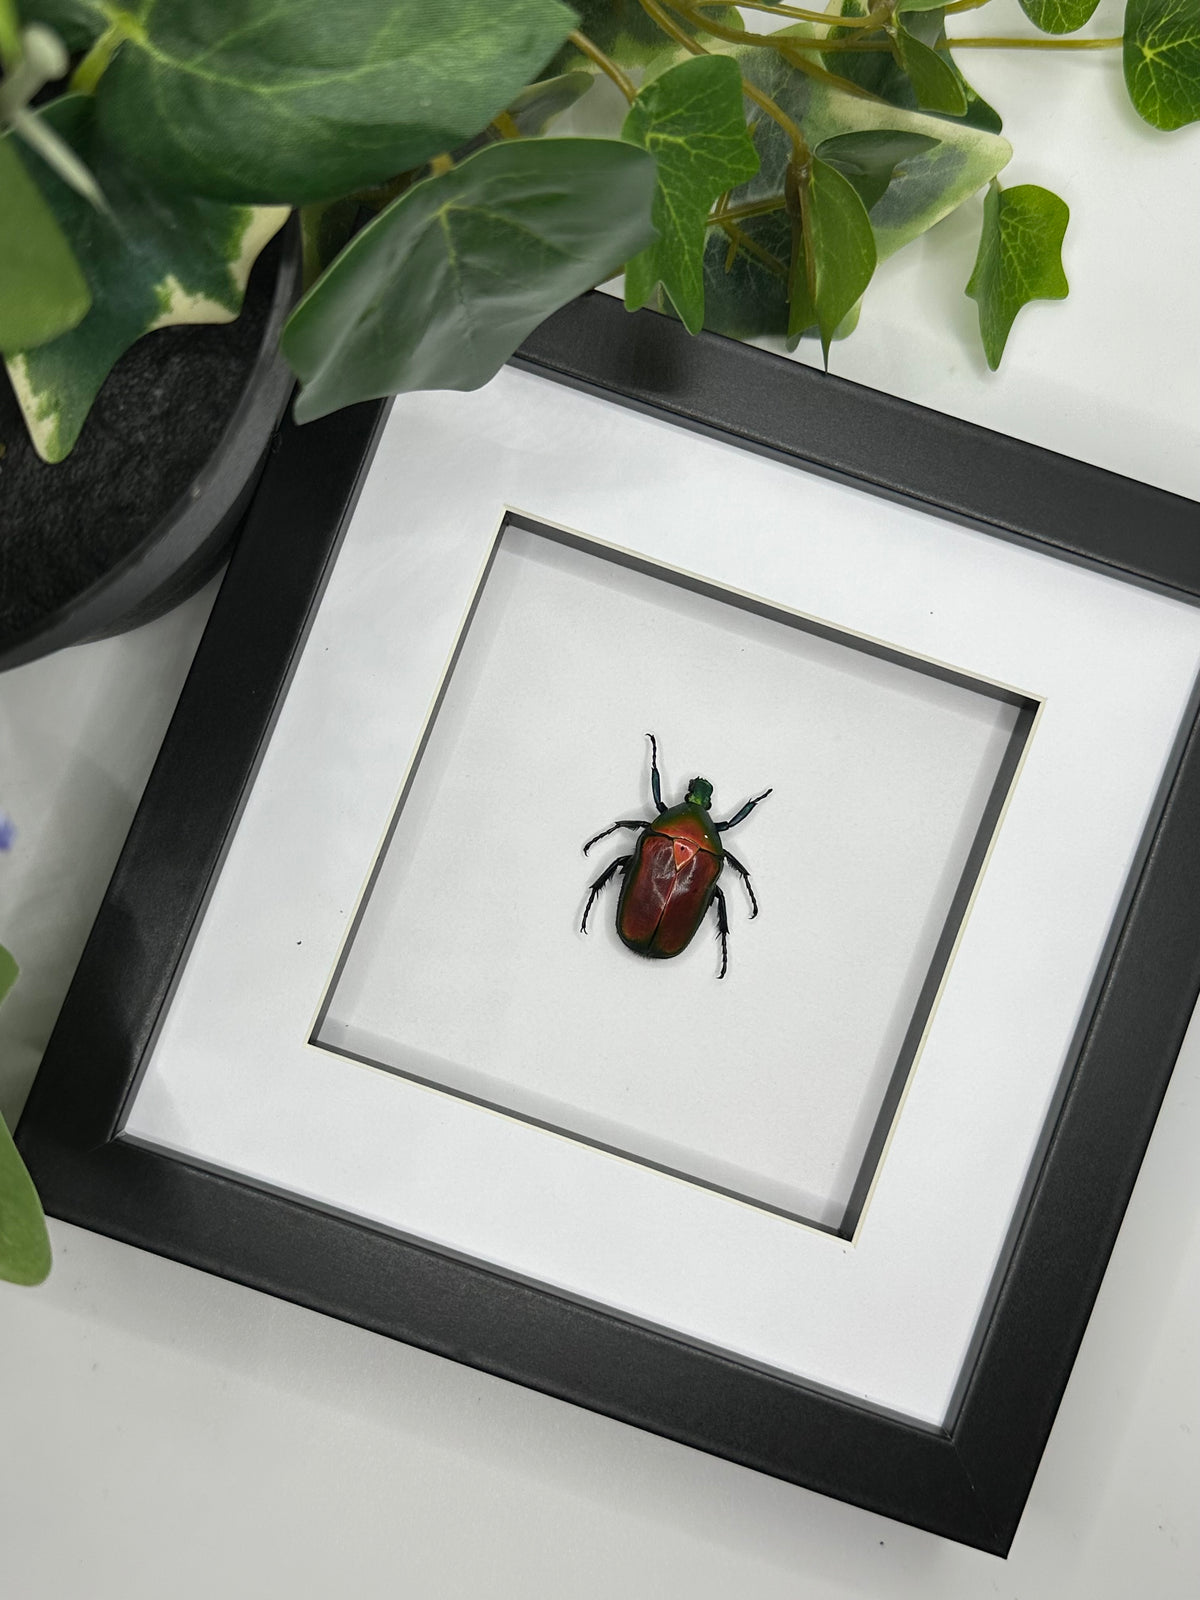 Torynorrhina Flammea Beetle in a frame